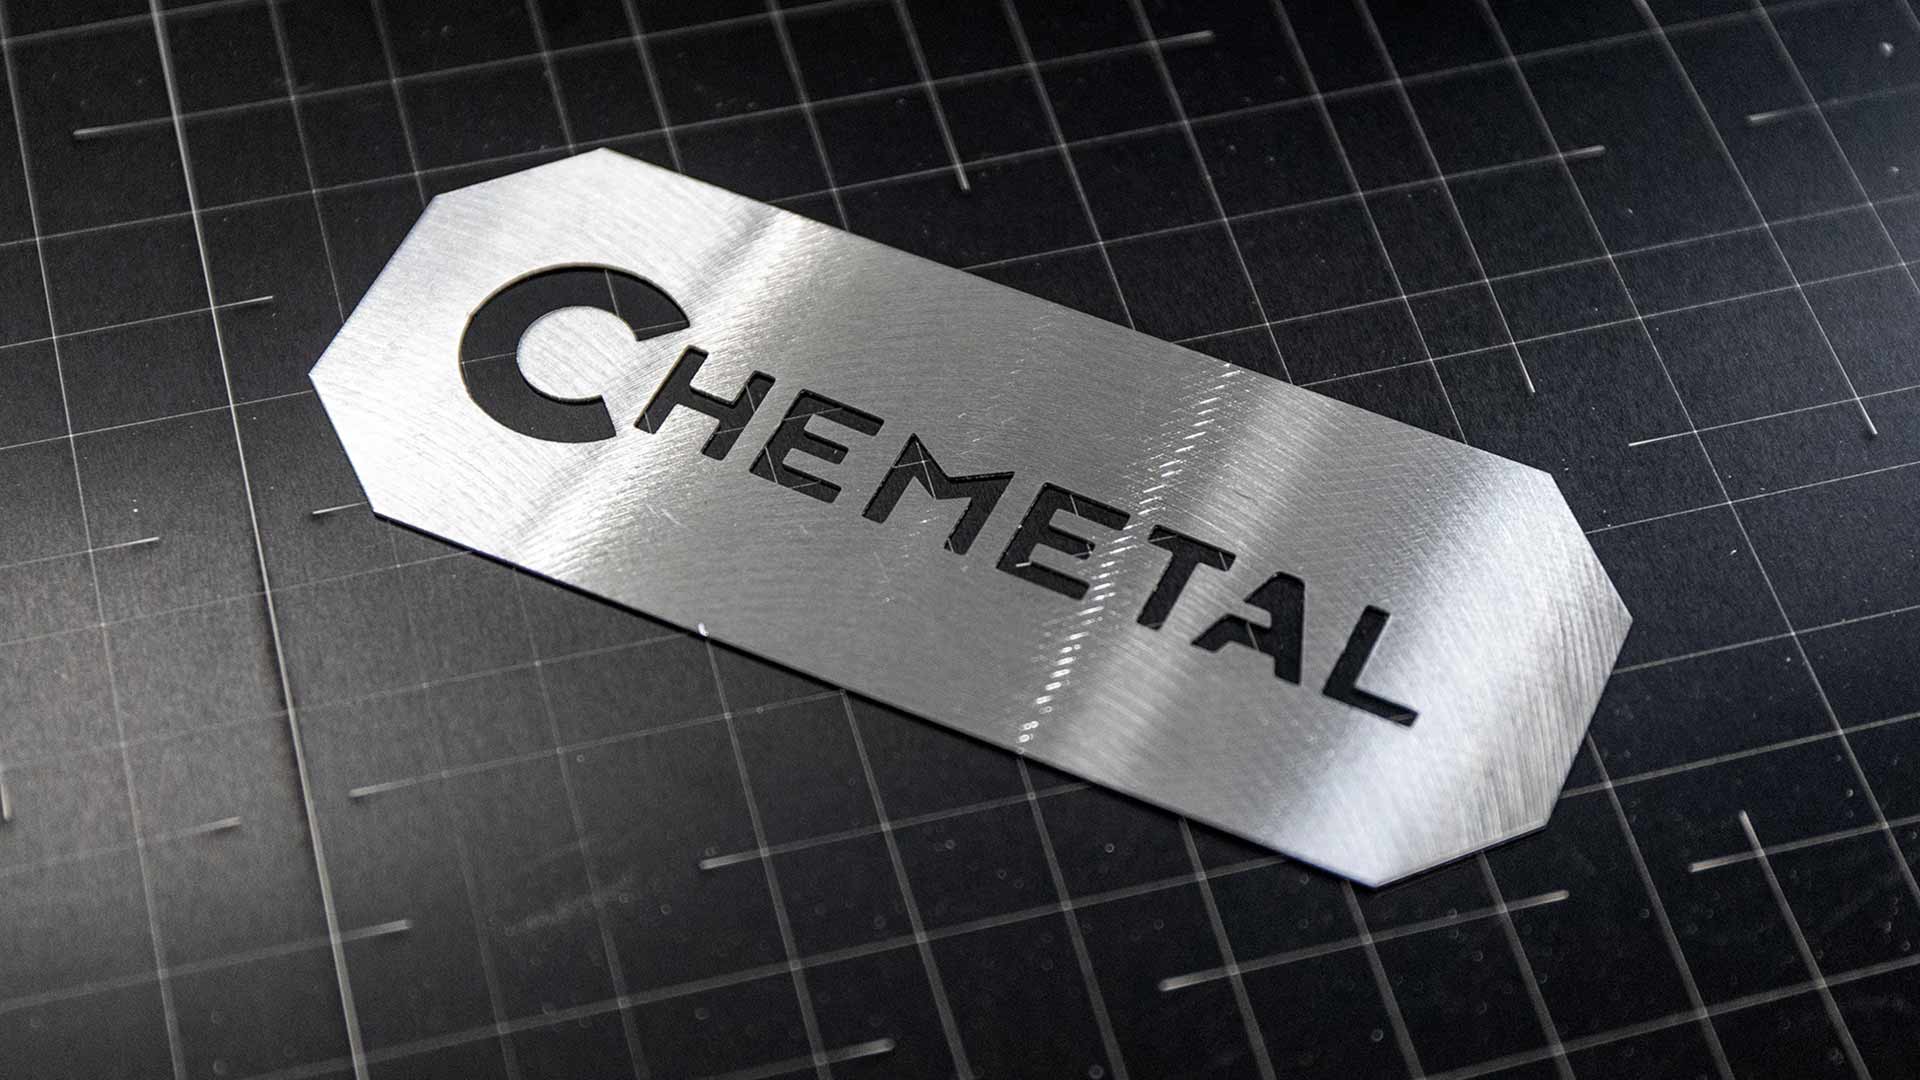 Chemetal - cutout